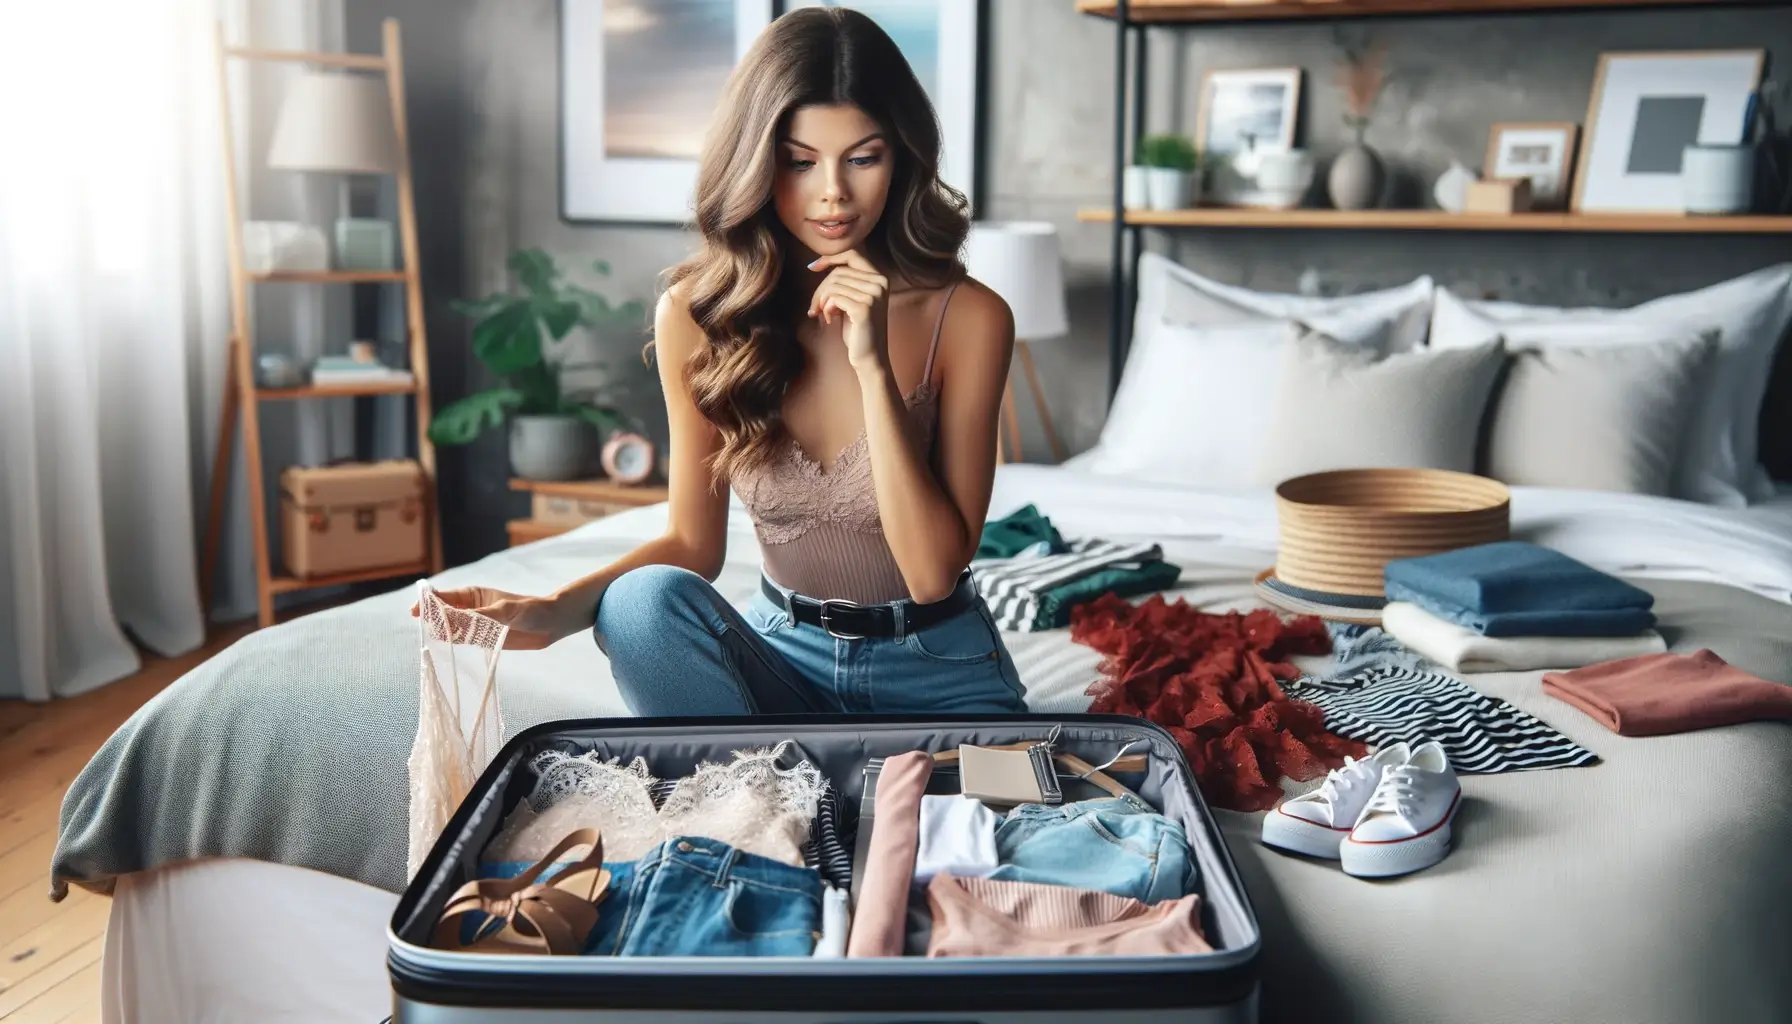 Изображение красивой молодой женщины, задумчиво собирающей чемодан в отпуск. Сцена передает волнение и ожидание ее предстоящей поездки.